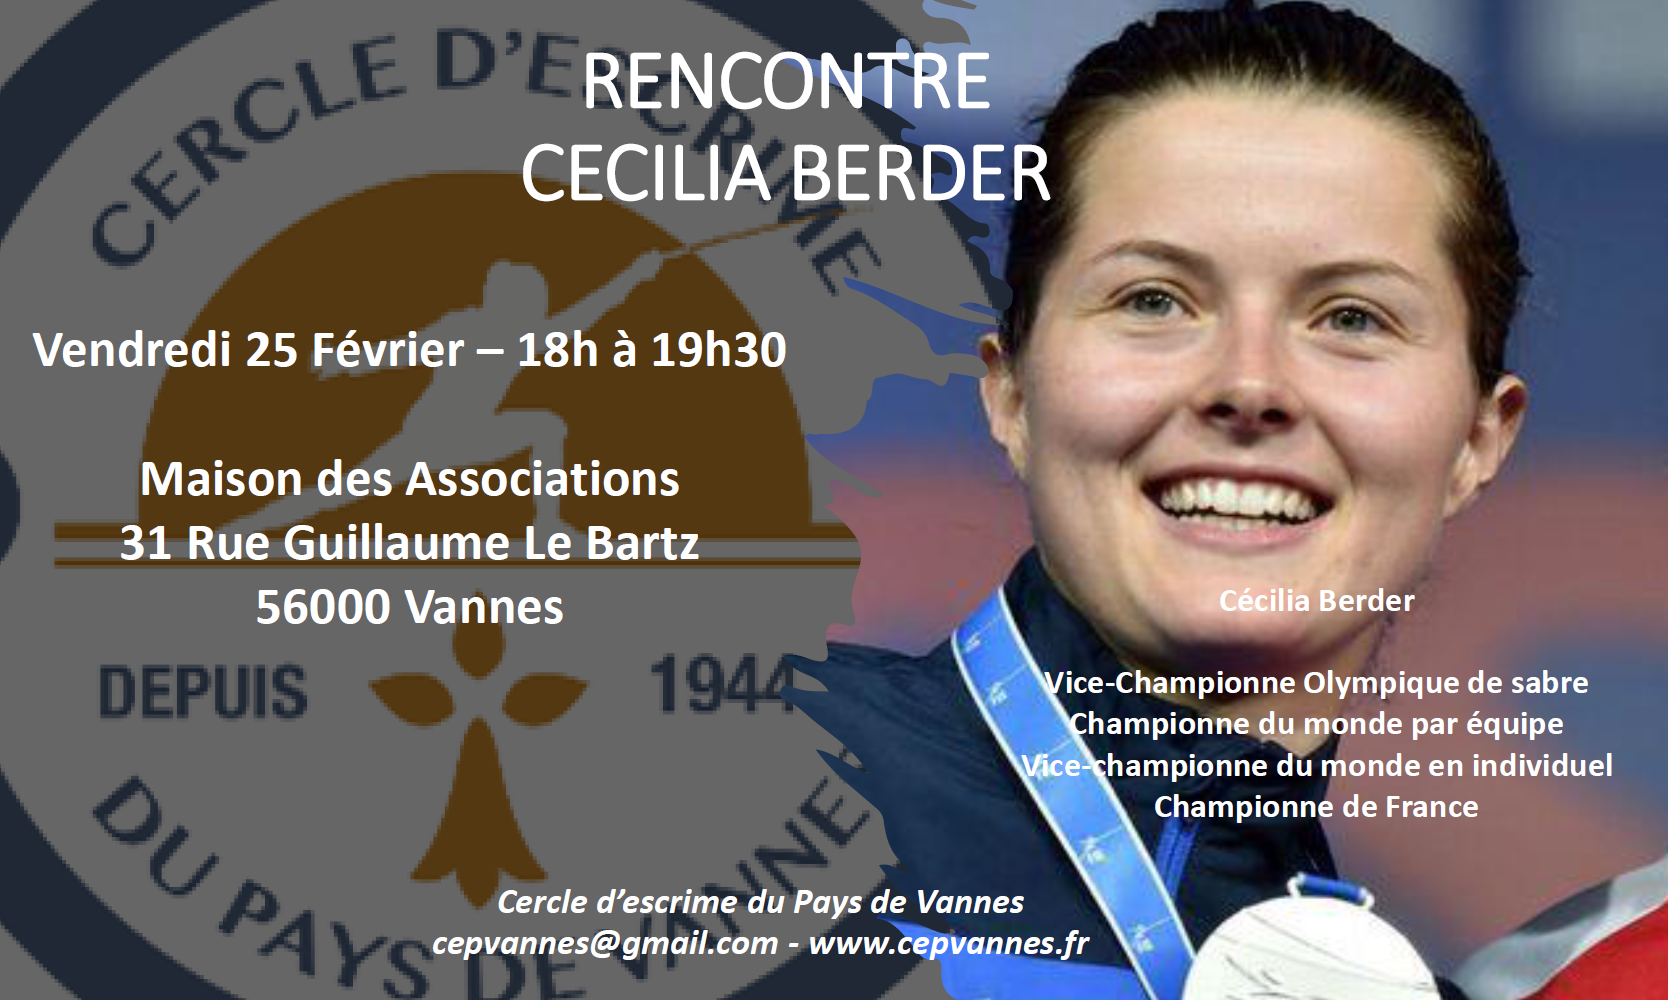 Rencontre avec Cécilia Berder à Vannes vendredi 25 Fevrier